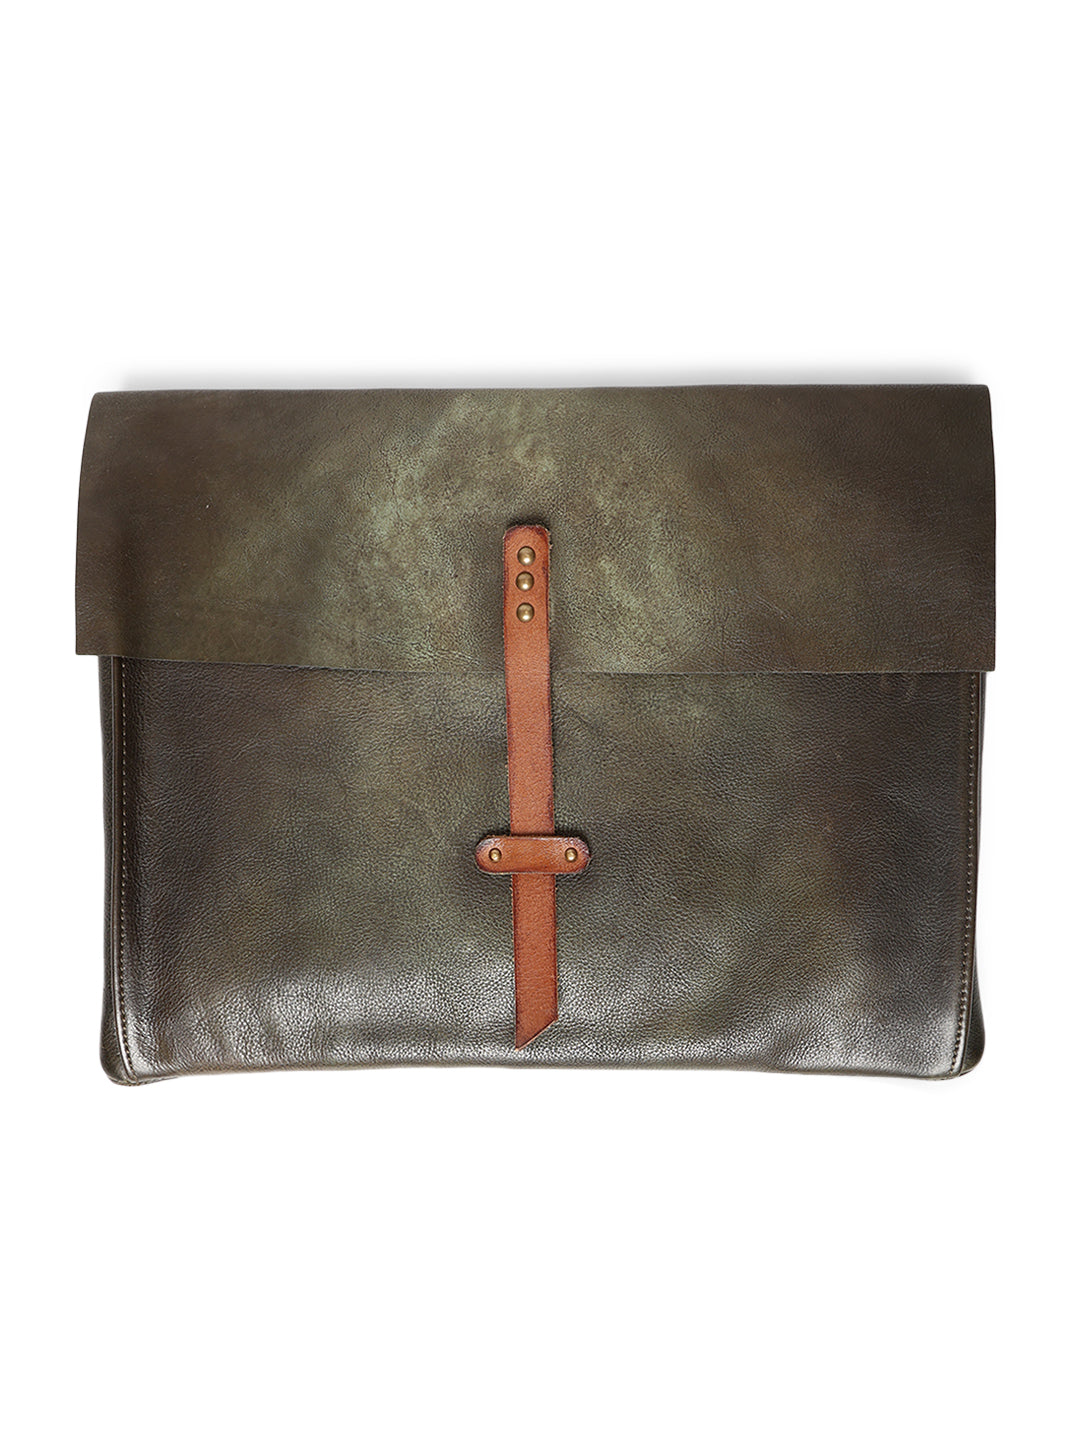 PinnacleHide Olive Leather Laptop Sleeves